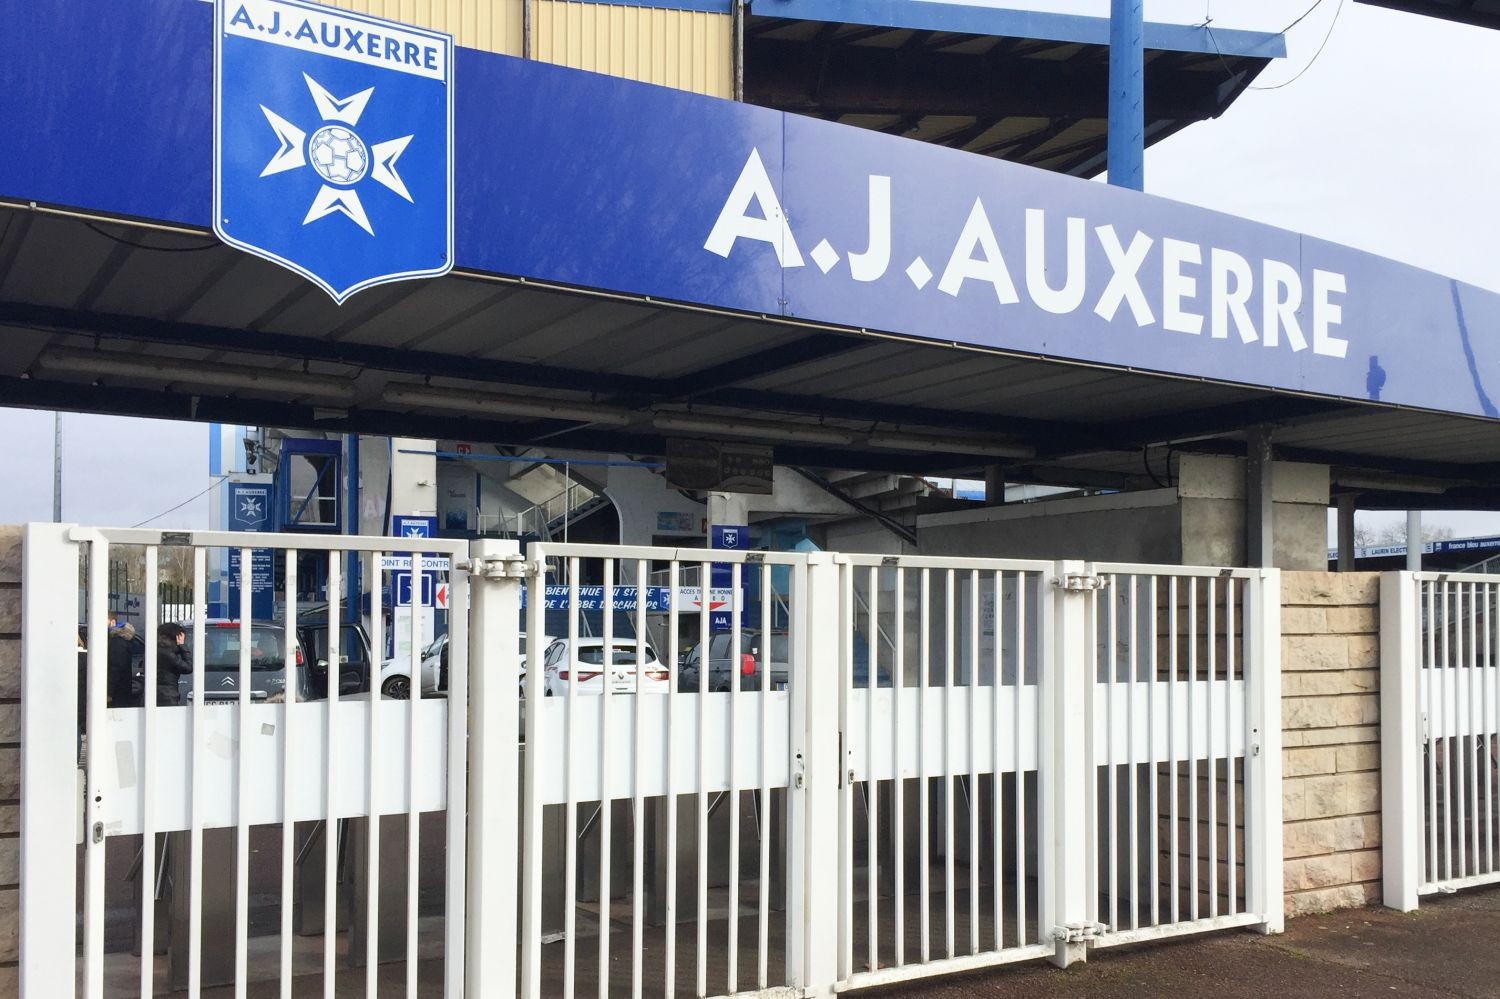 OFICJALNIE: AJ Auxerre pożegnało się z Ligue 1